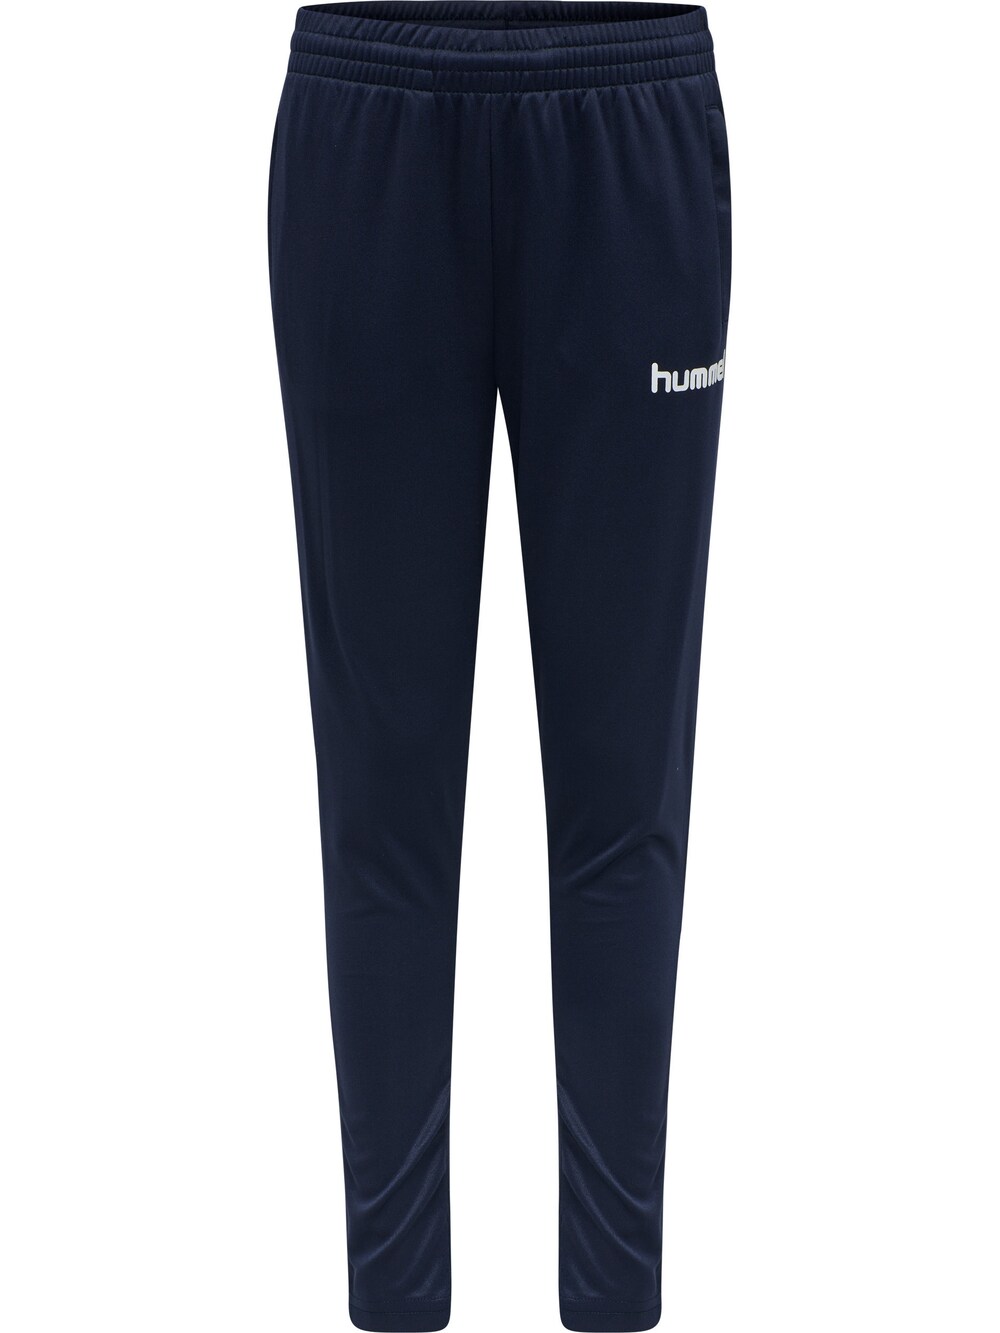 Обычные тренировочные брюки Hummel, темно-синий обычные брюки hummel bassim темно синий